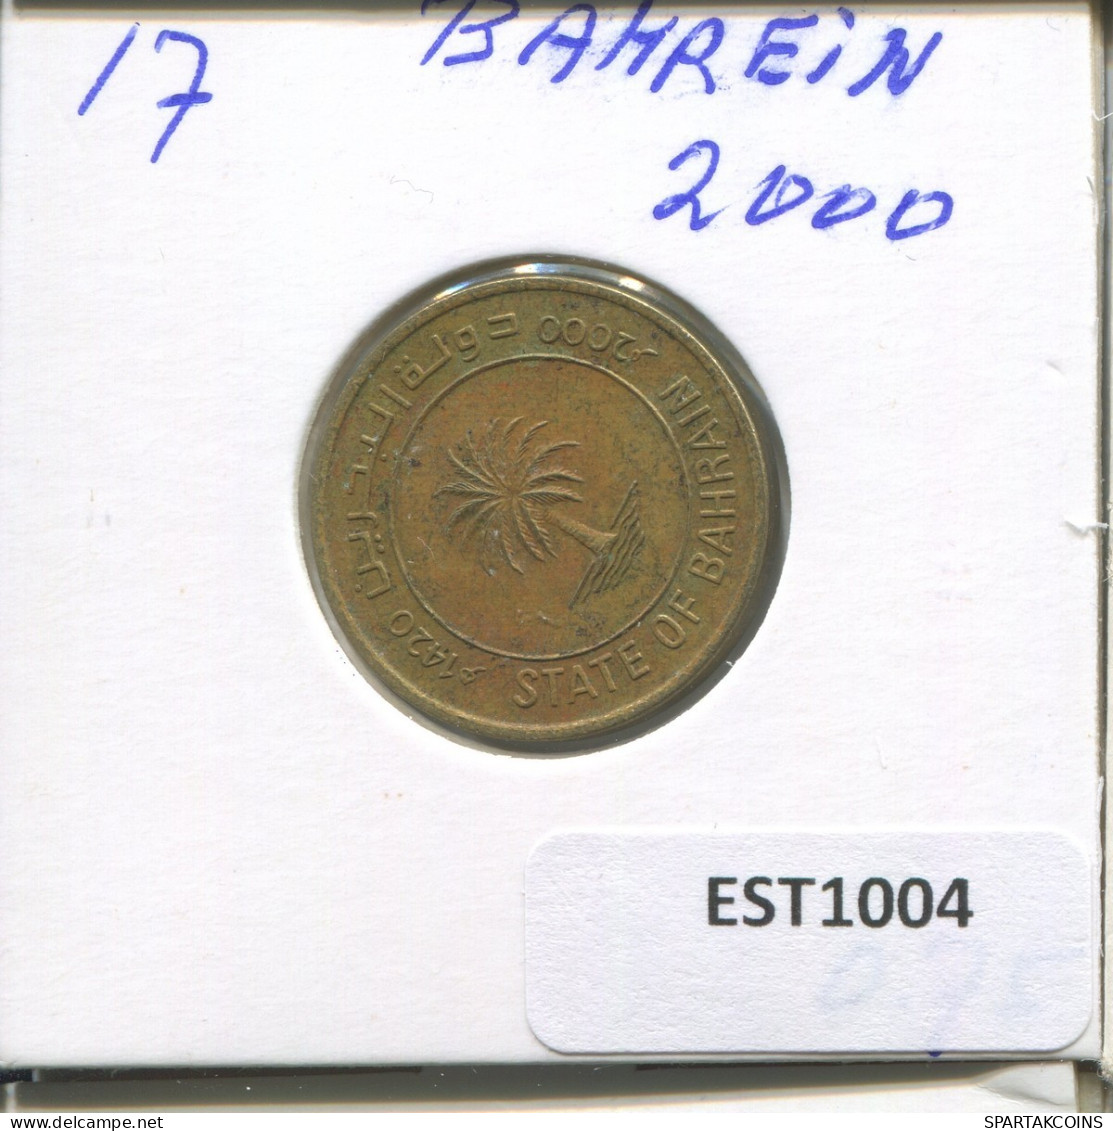 10 FILS 2000 BAHRAIN Islamic Coin #EST1004.2.U - Bahrain